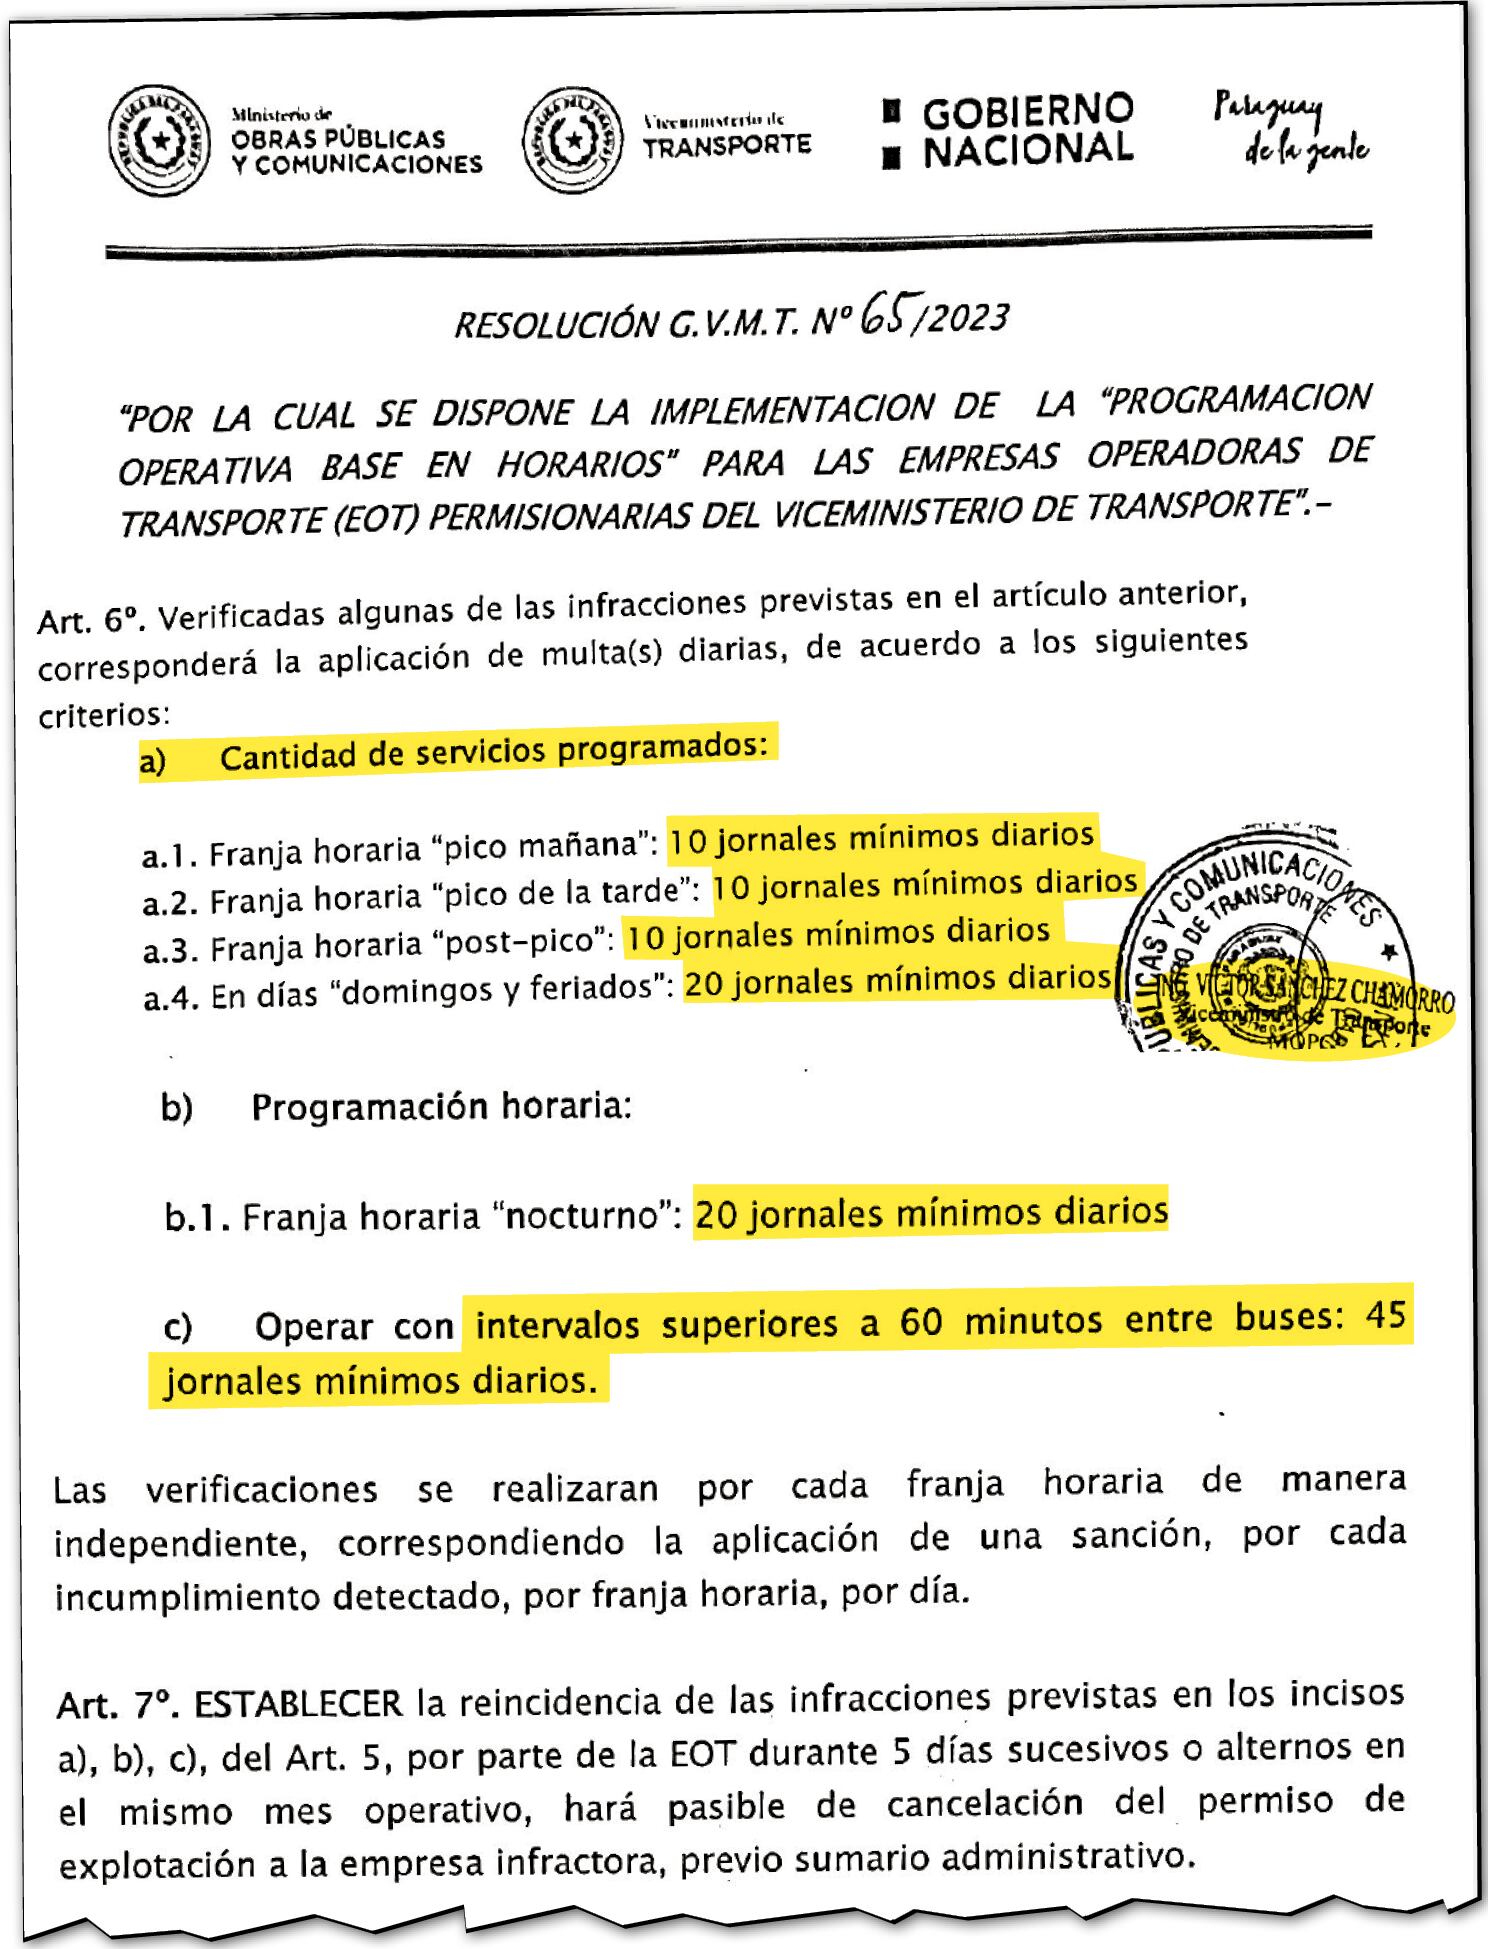 Facsímil de la Resolución N° 65/2023 del viceministro Víctor Sánchez, en la que estipula las multas por incumplimiento de frecuencia, por franja horaria. Durante el día es de 10 jornales mínimos.